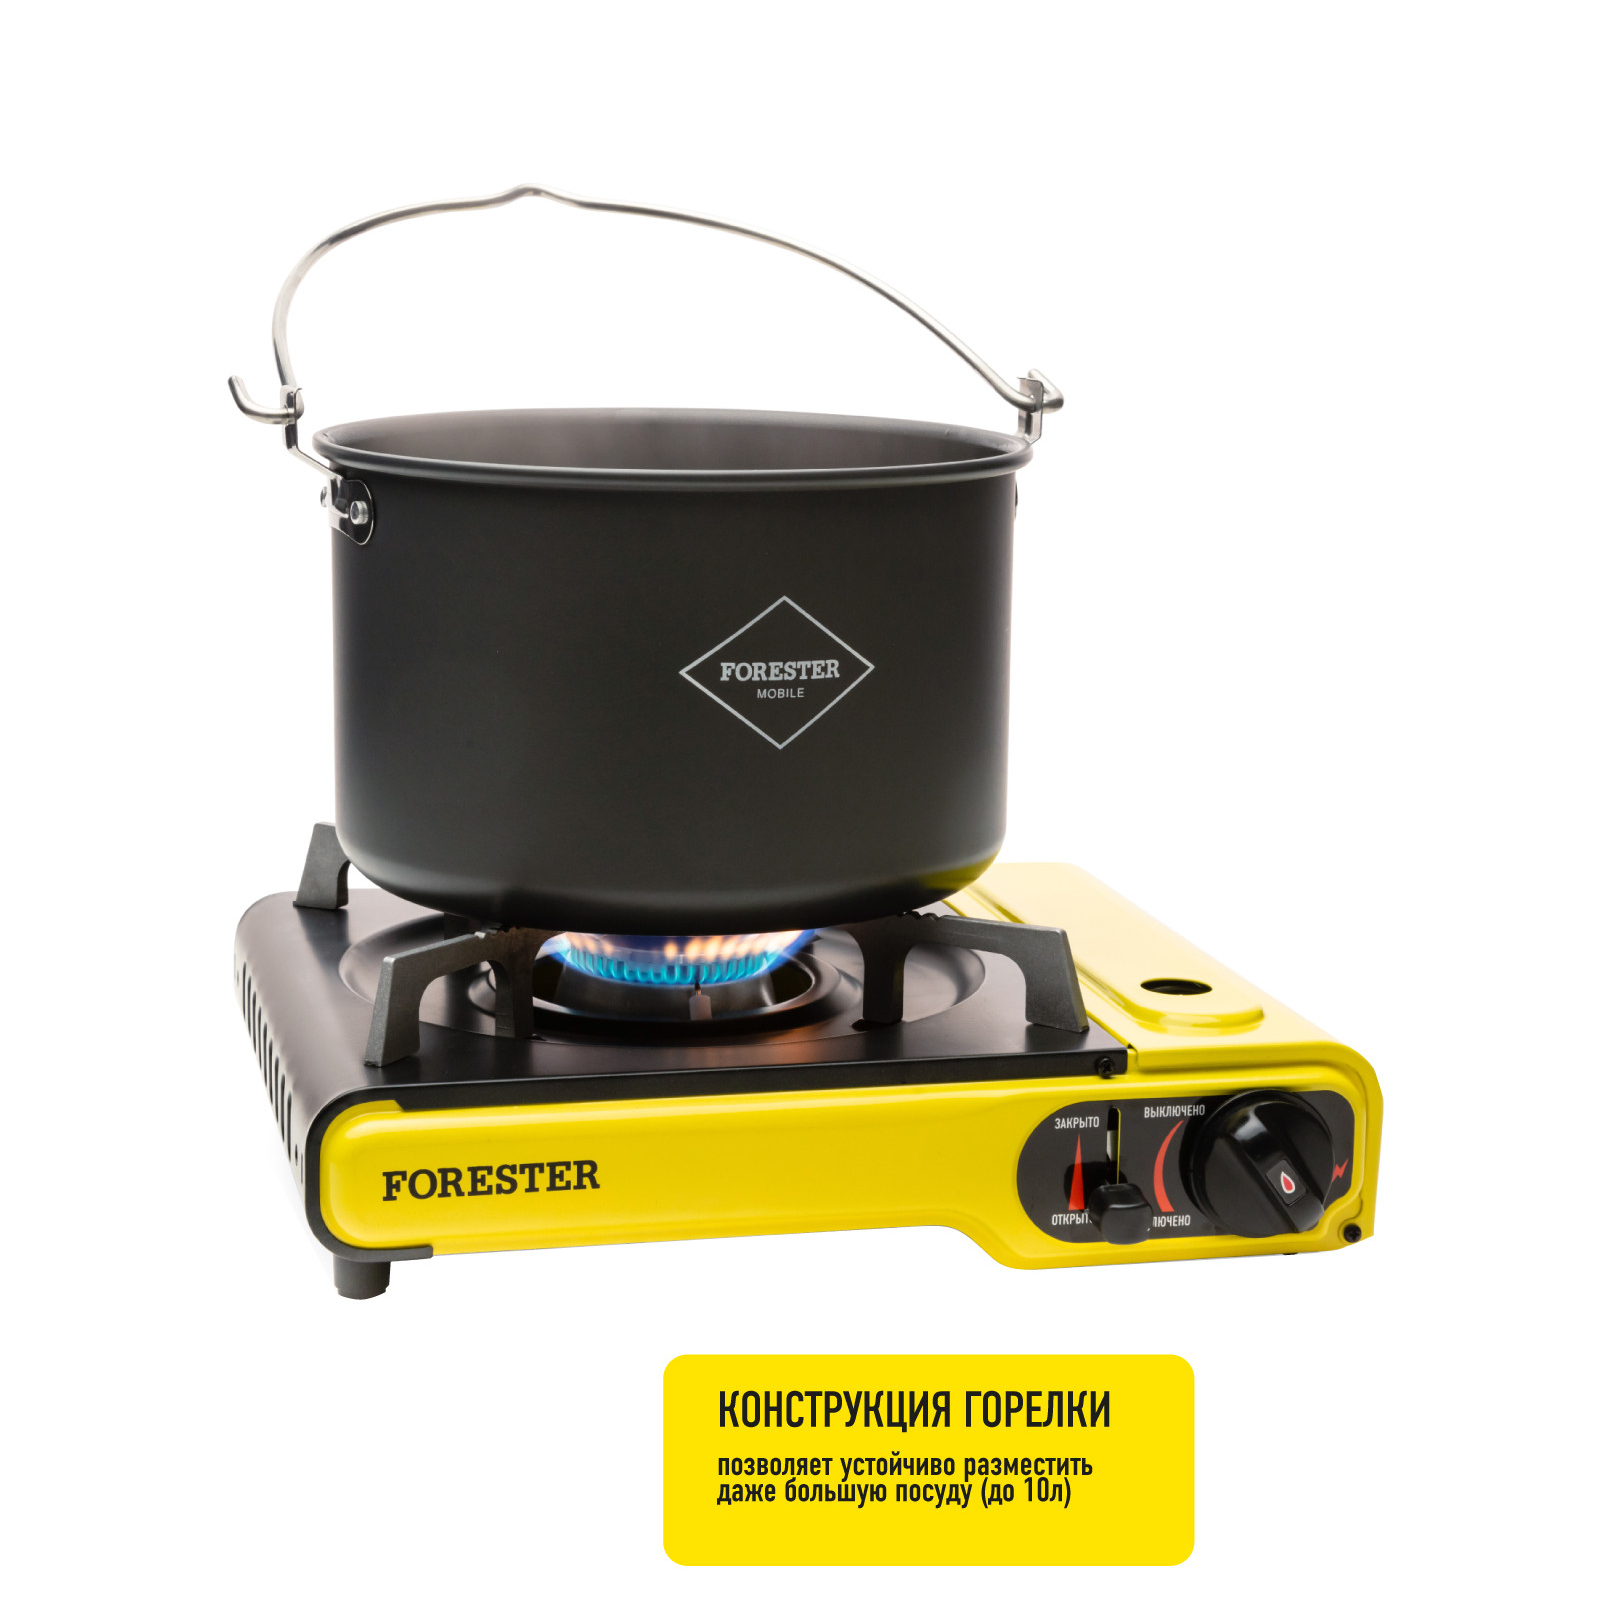 Портативная газовая плита Forester Mobile жёлтая с чёрным 38х28х10 см, цвет жёлтый - фото 5